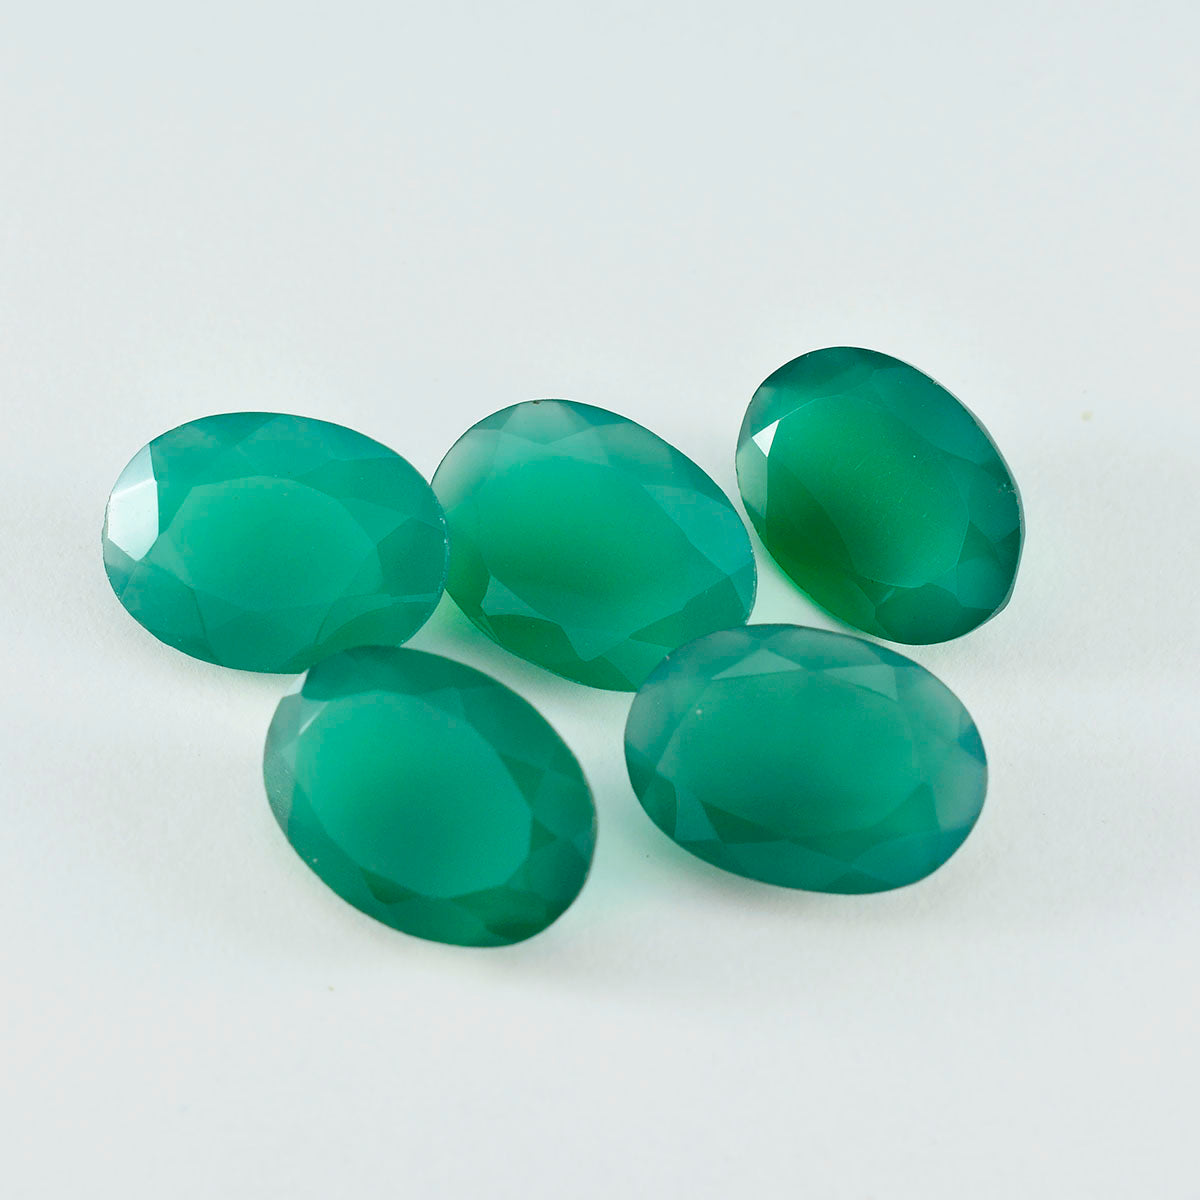 riyogems 1шт натуральный зеленый оникс ограненный 12x16 мм овальной формы милые качественные свободные драгоценные камни